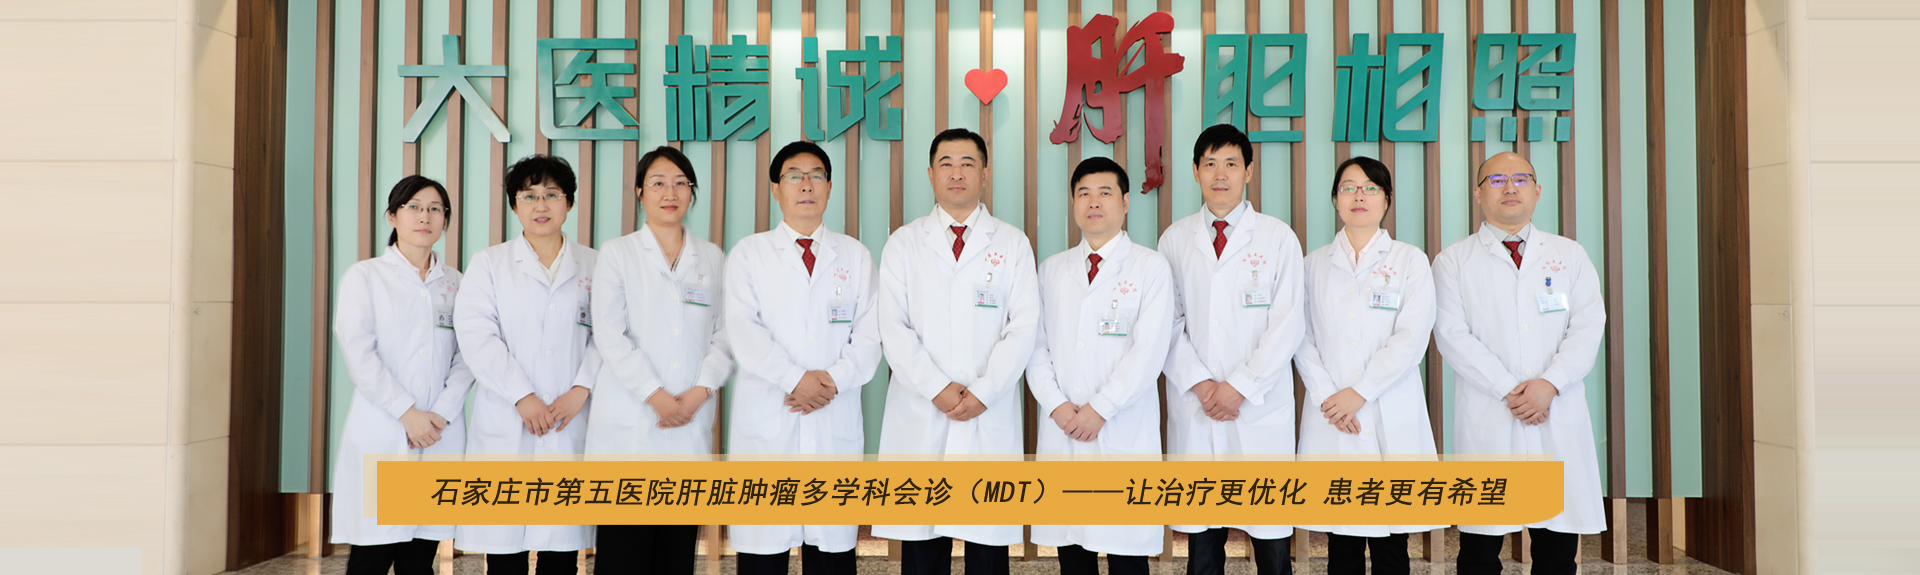 石家庄市第五医院肝脏肿瘤多学科会诊（MDT）